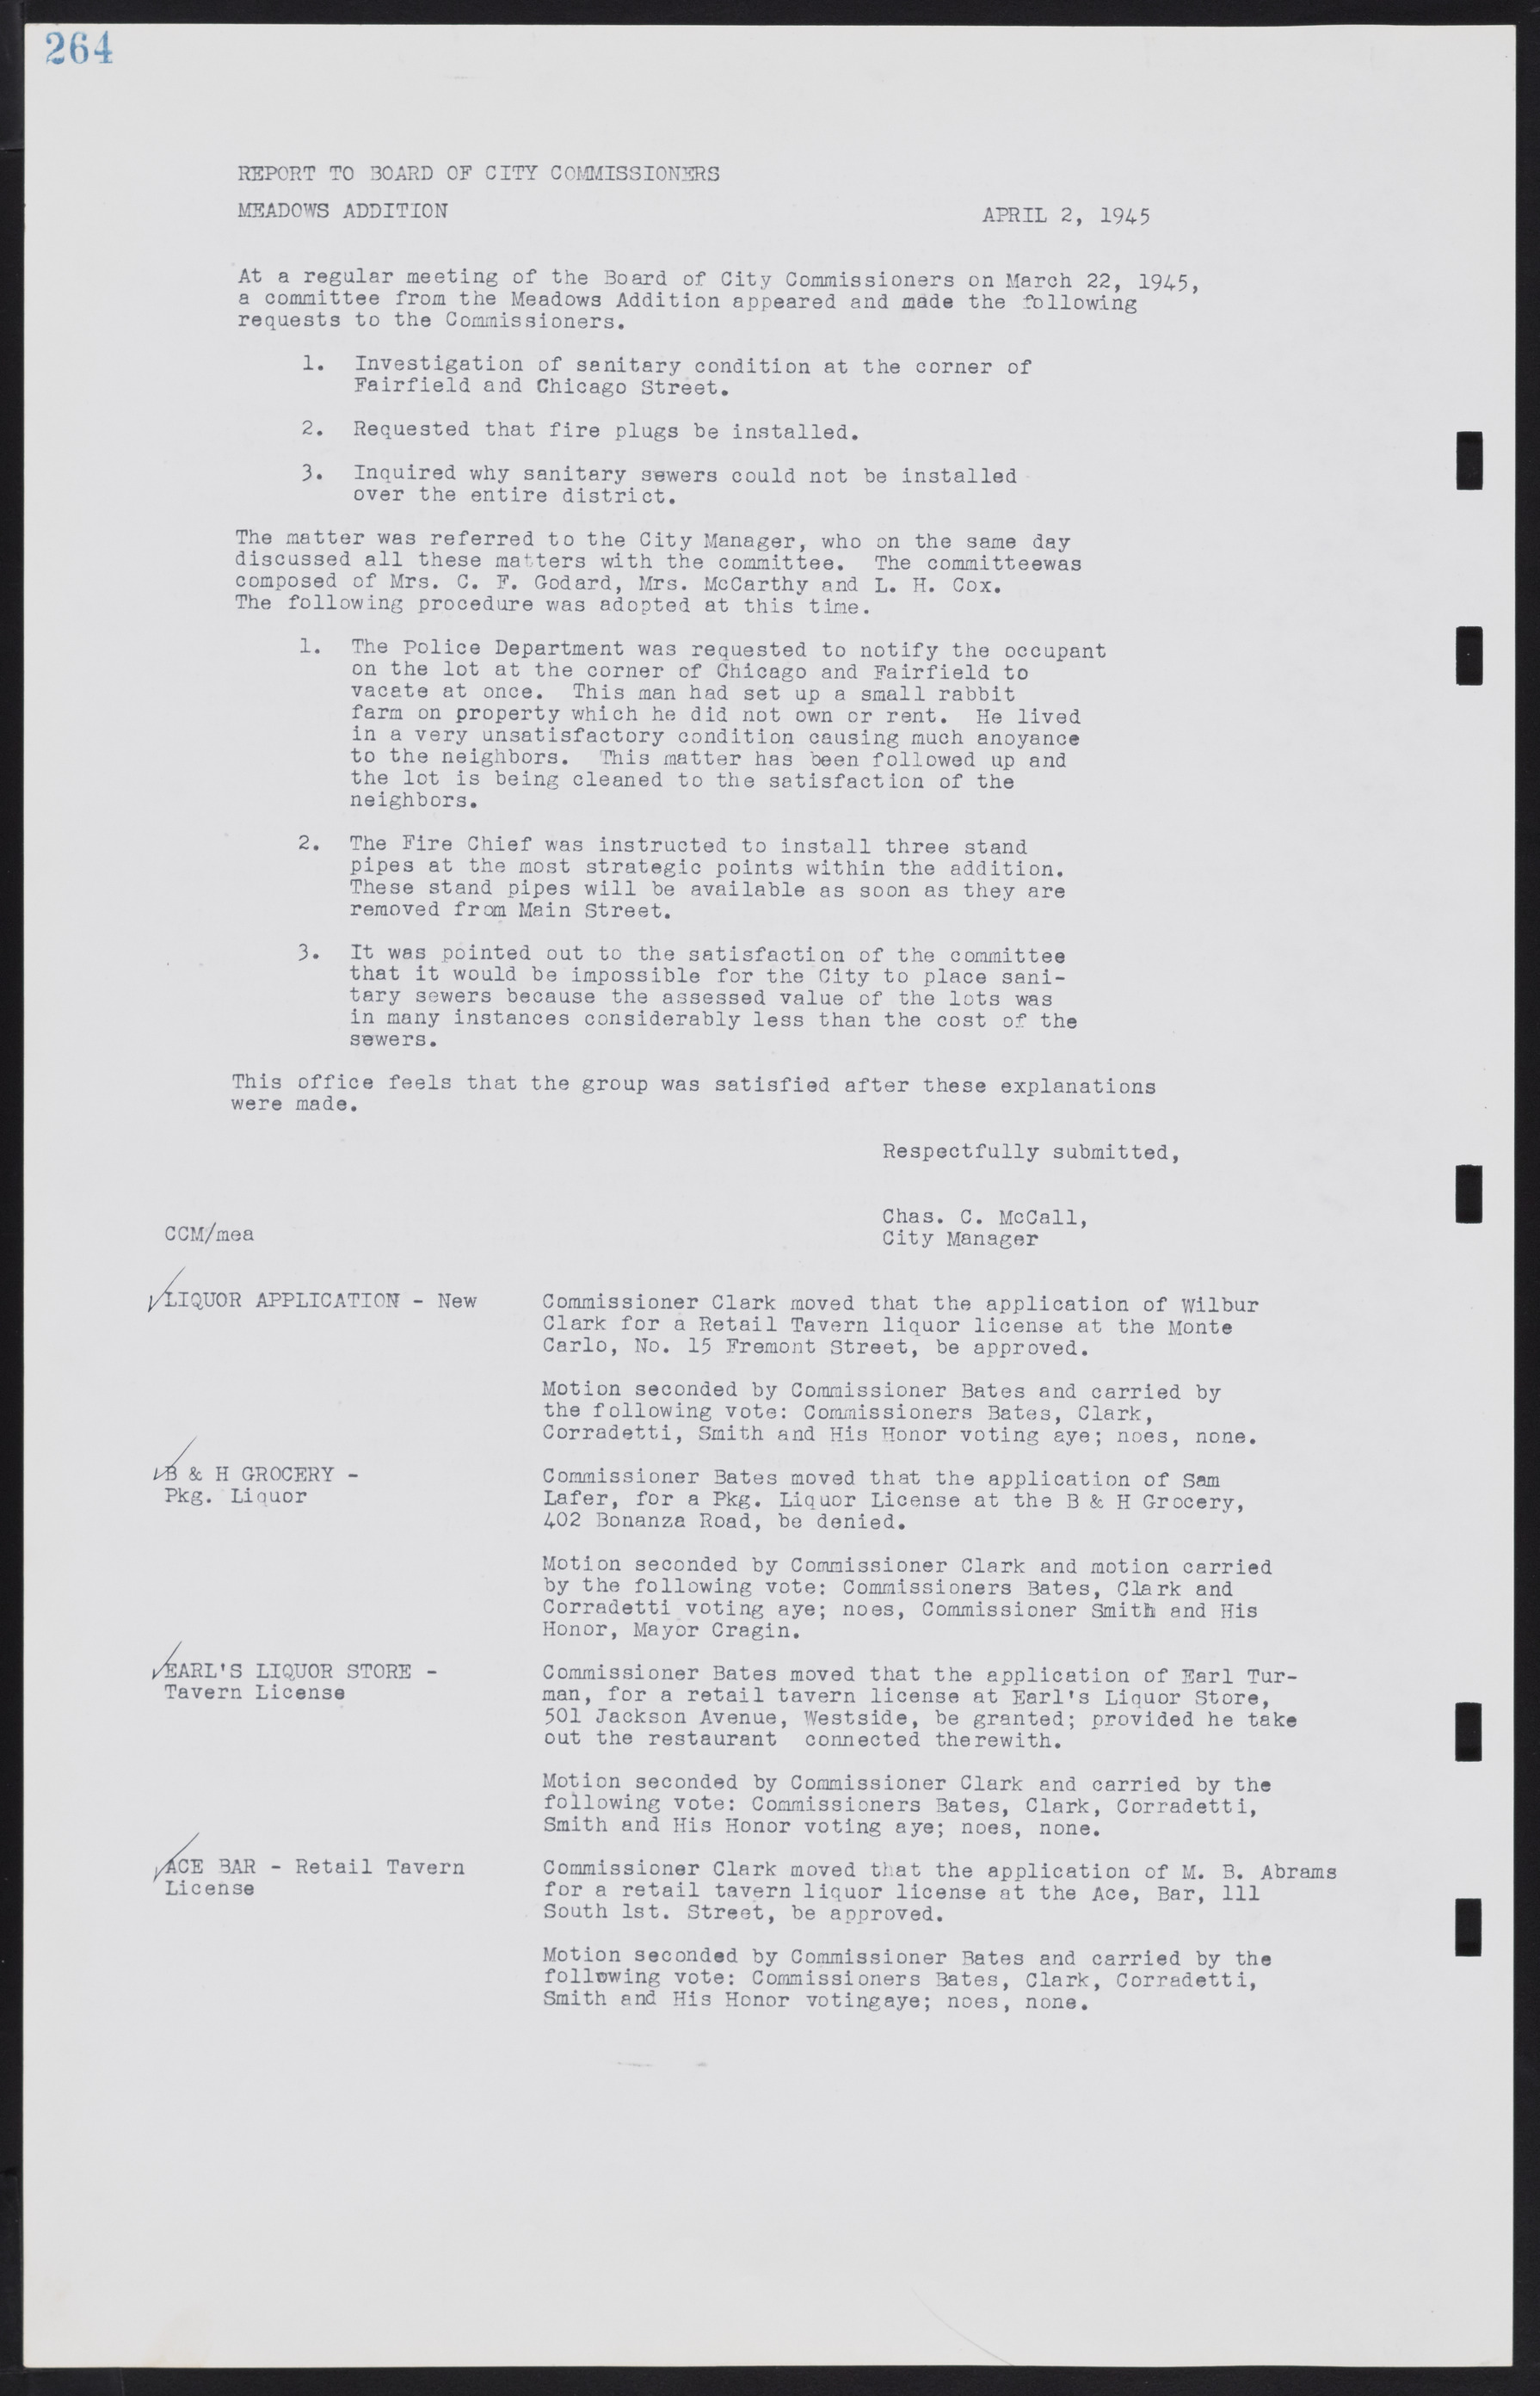 Las Vegas City Commission Minutes, August 11, 1942 to December 30, 1946, lvc000005-286